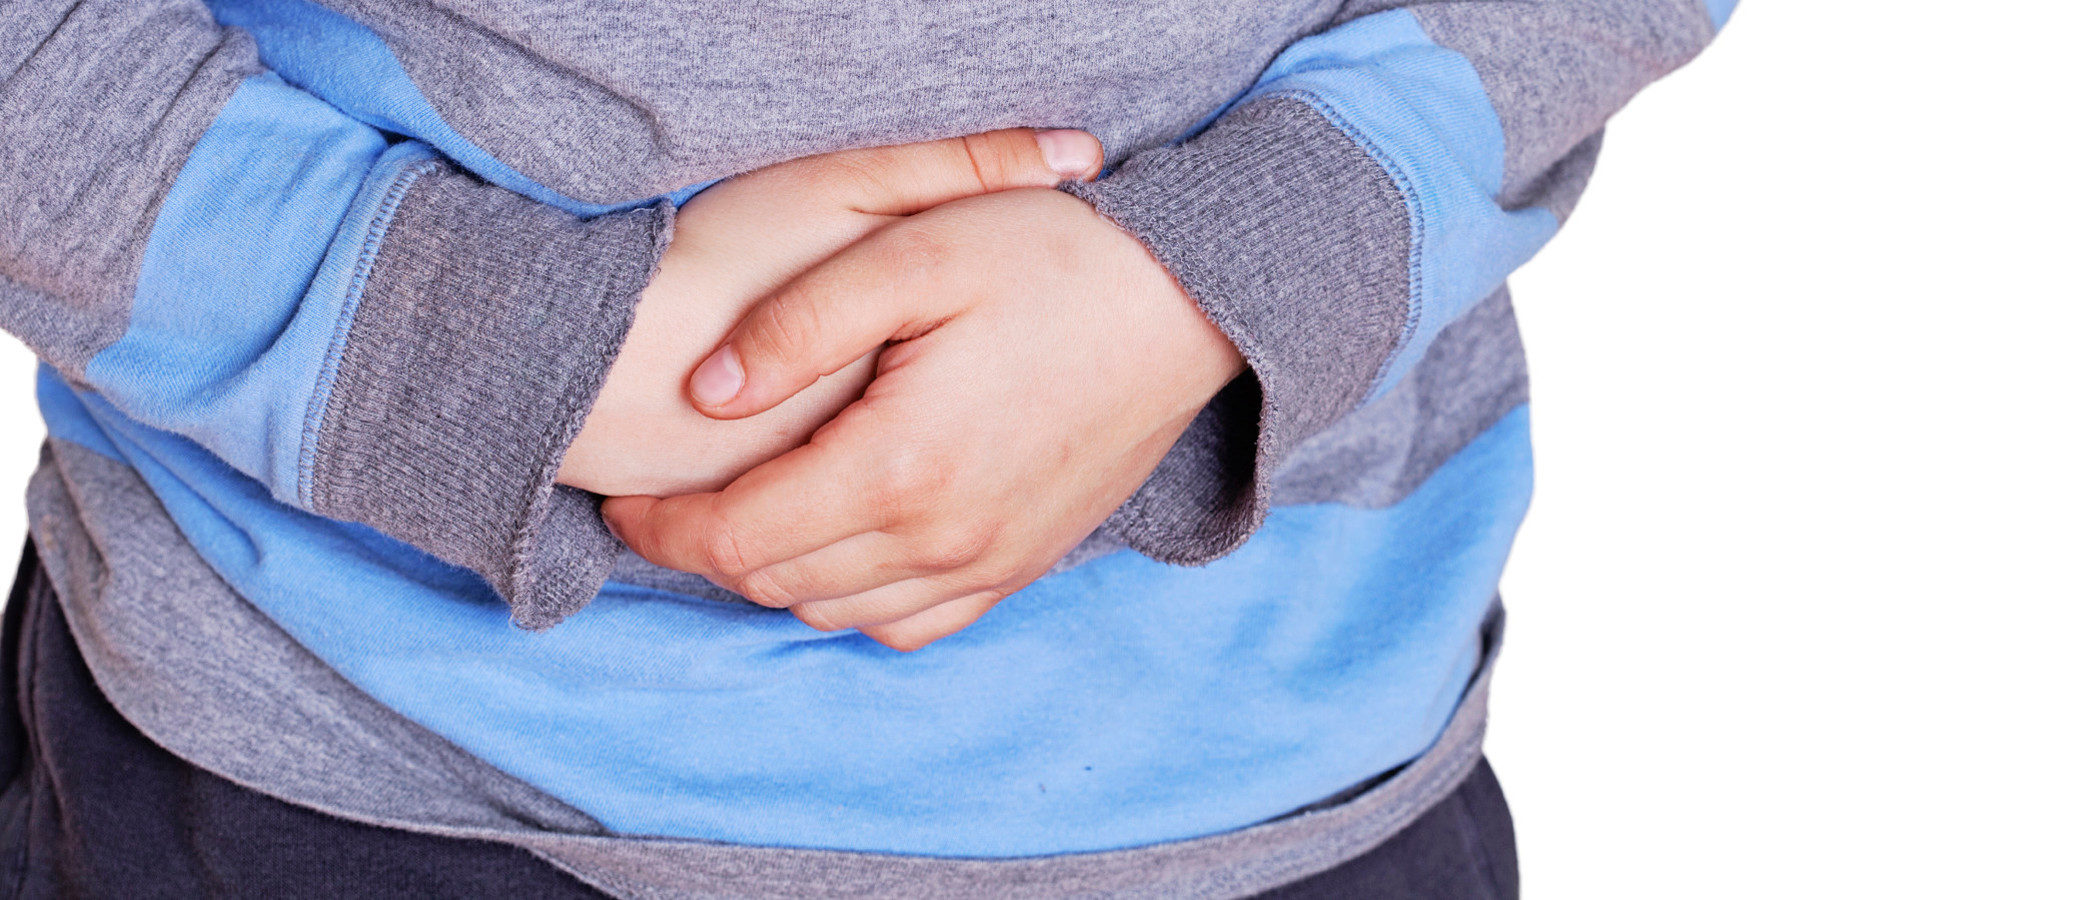 Remedios caseros para aliviar el dolor de barriga en niños